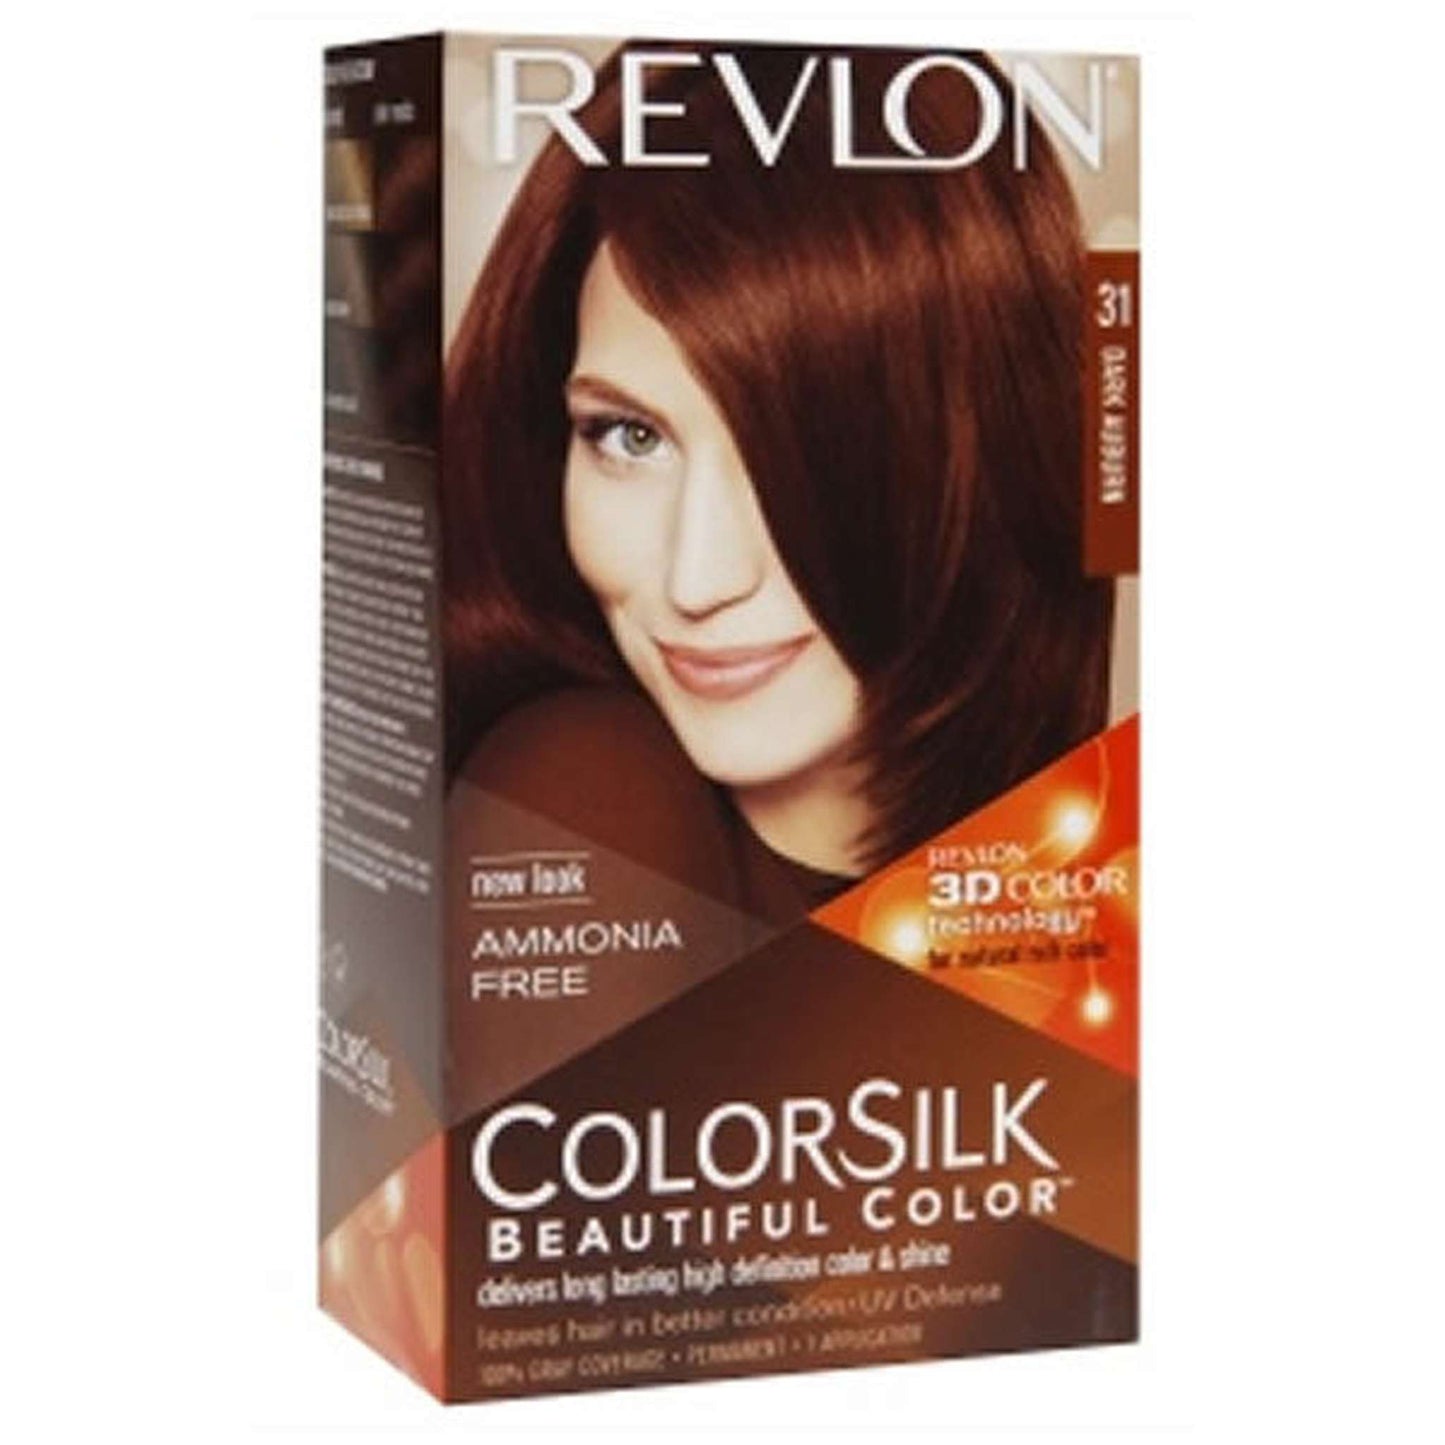 Revlon Colorsilk Beautiful Color 31 Brown Hair Coloring